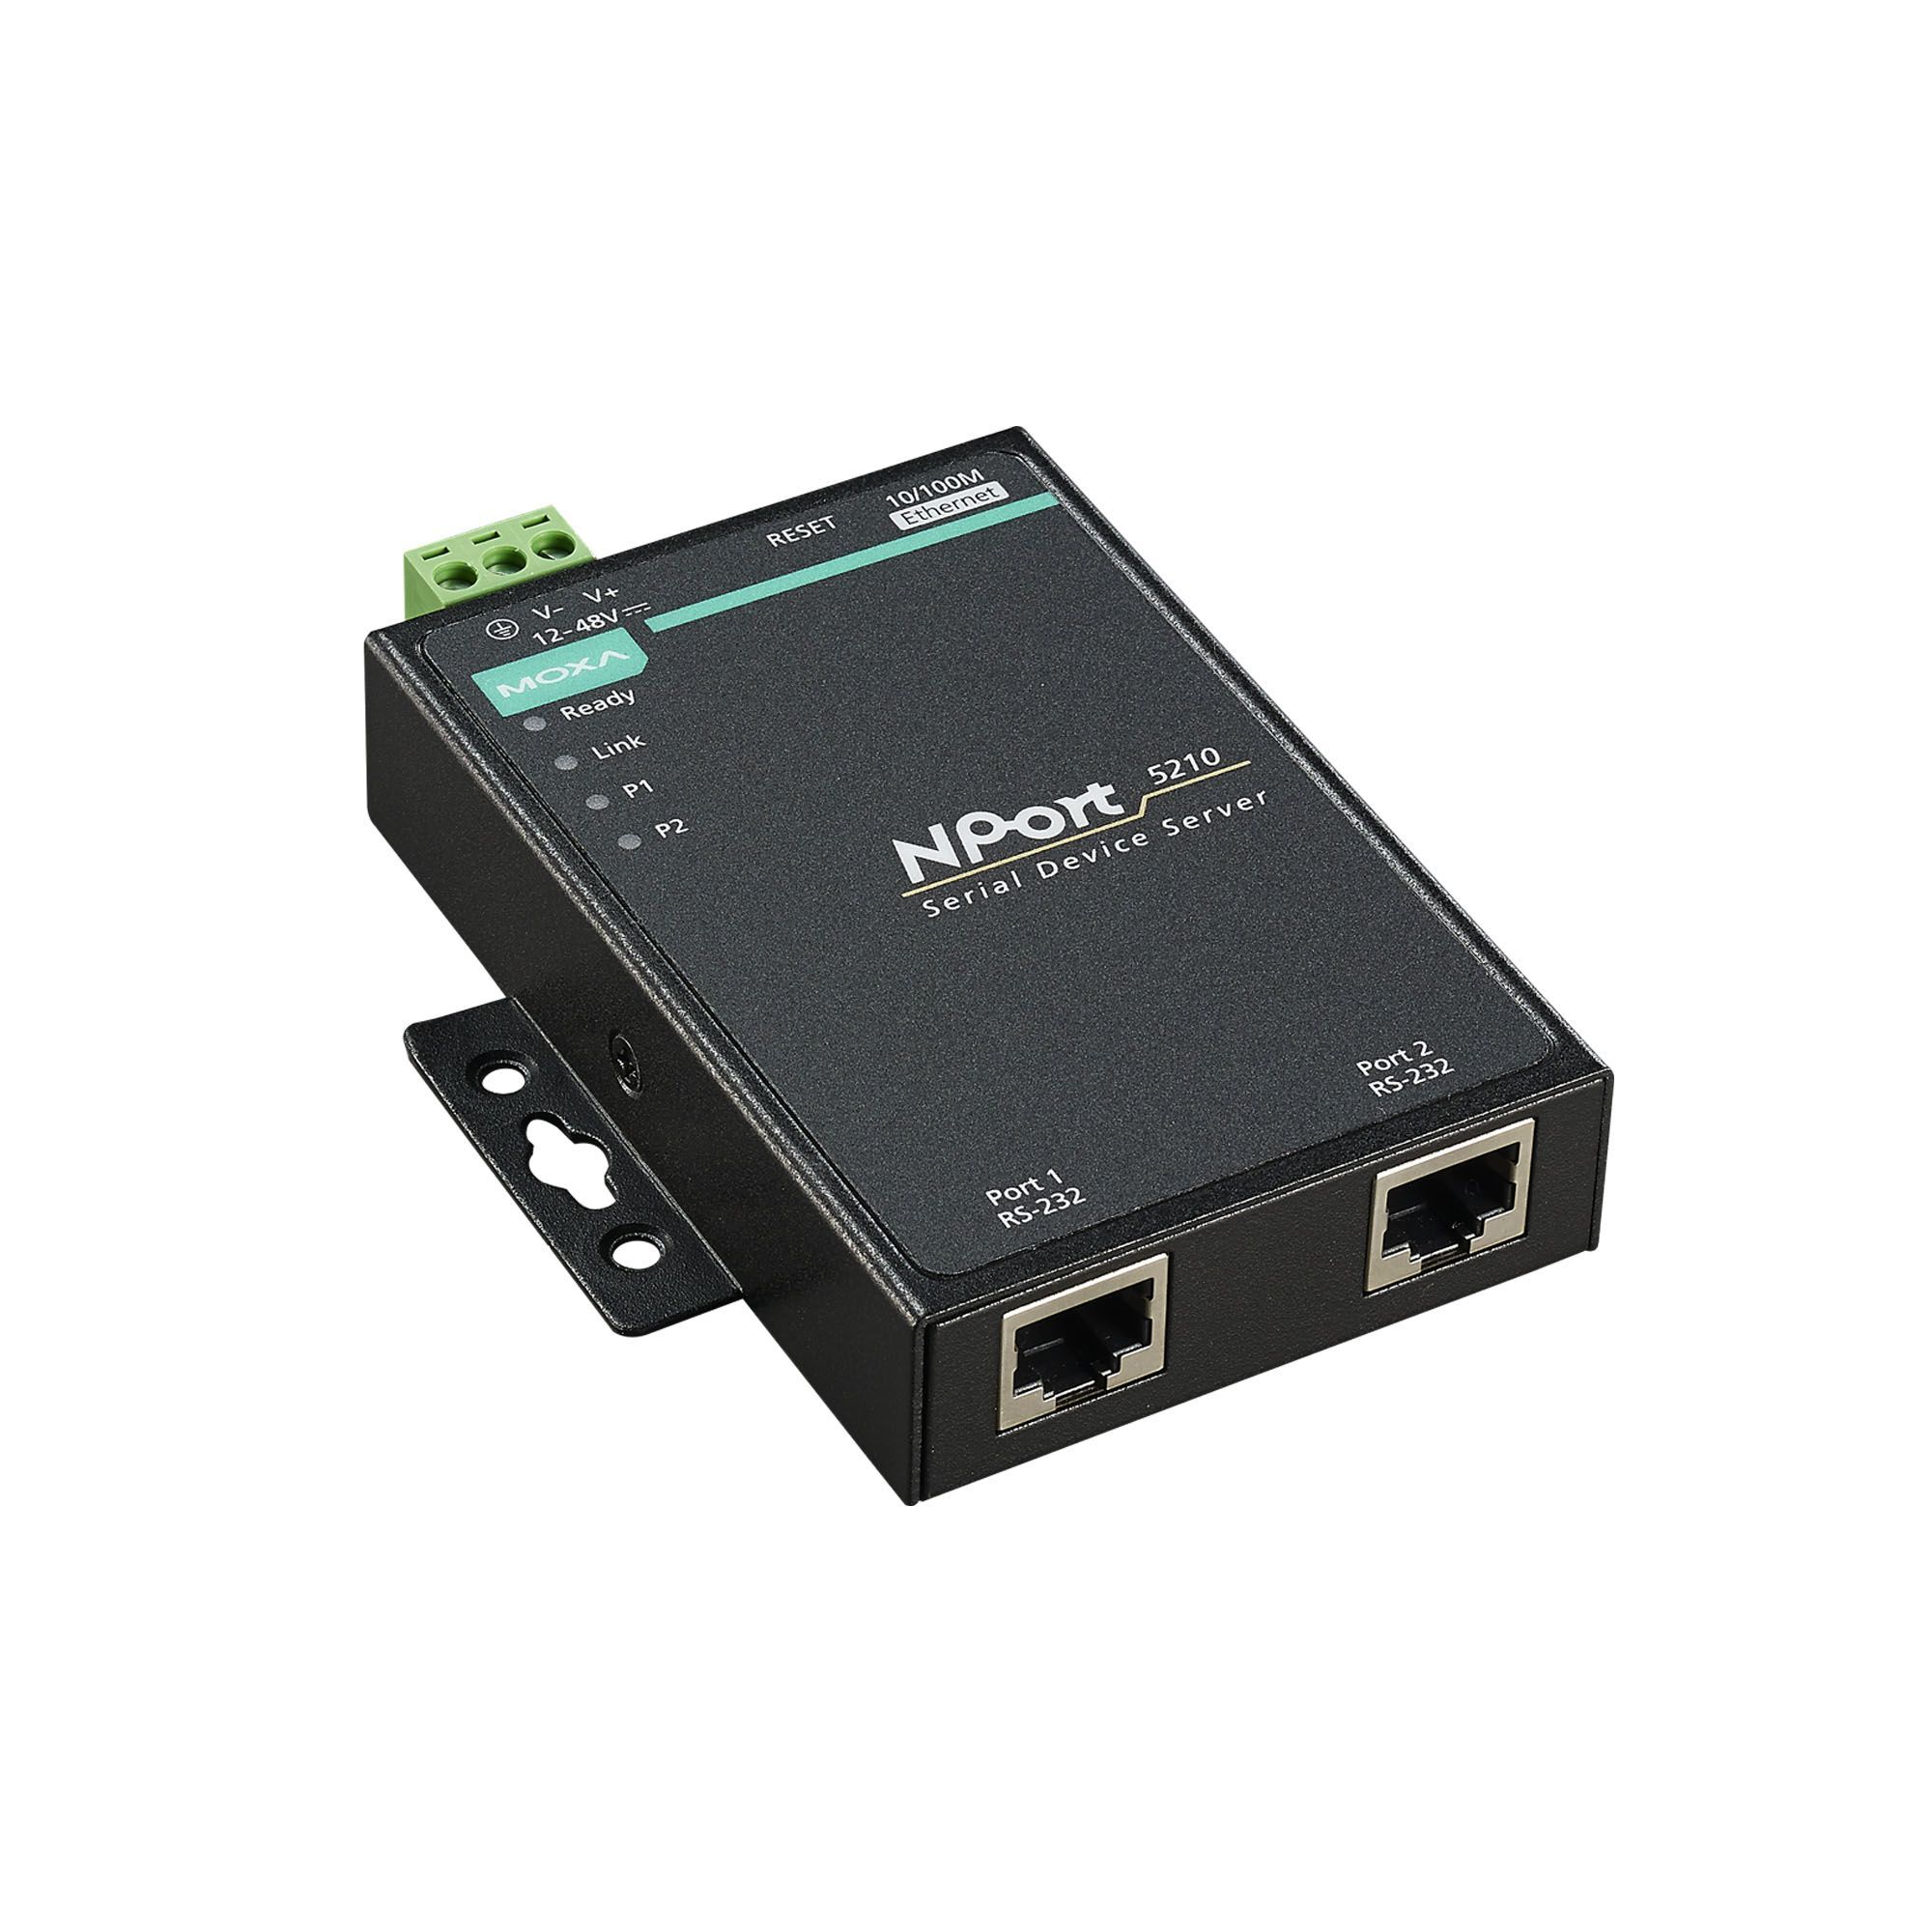 Серверное оборудование Moxa NPort 5210-T